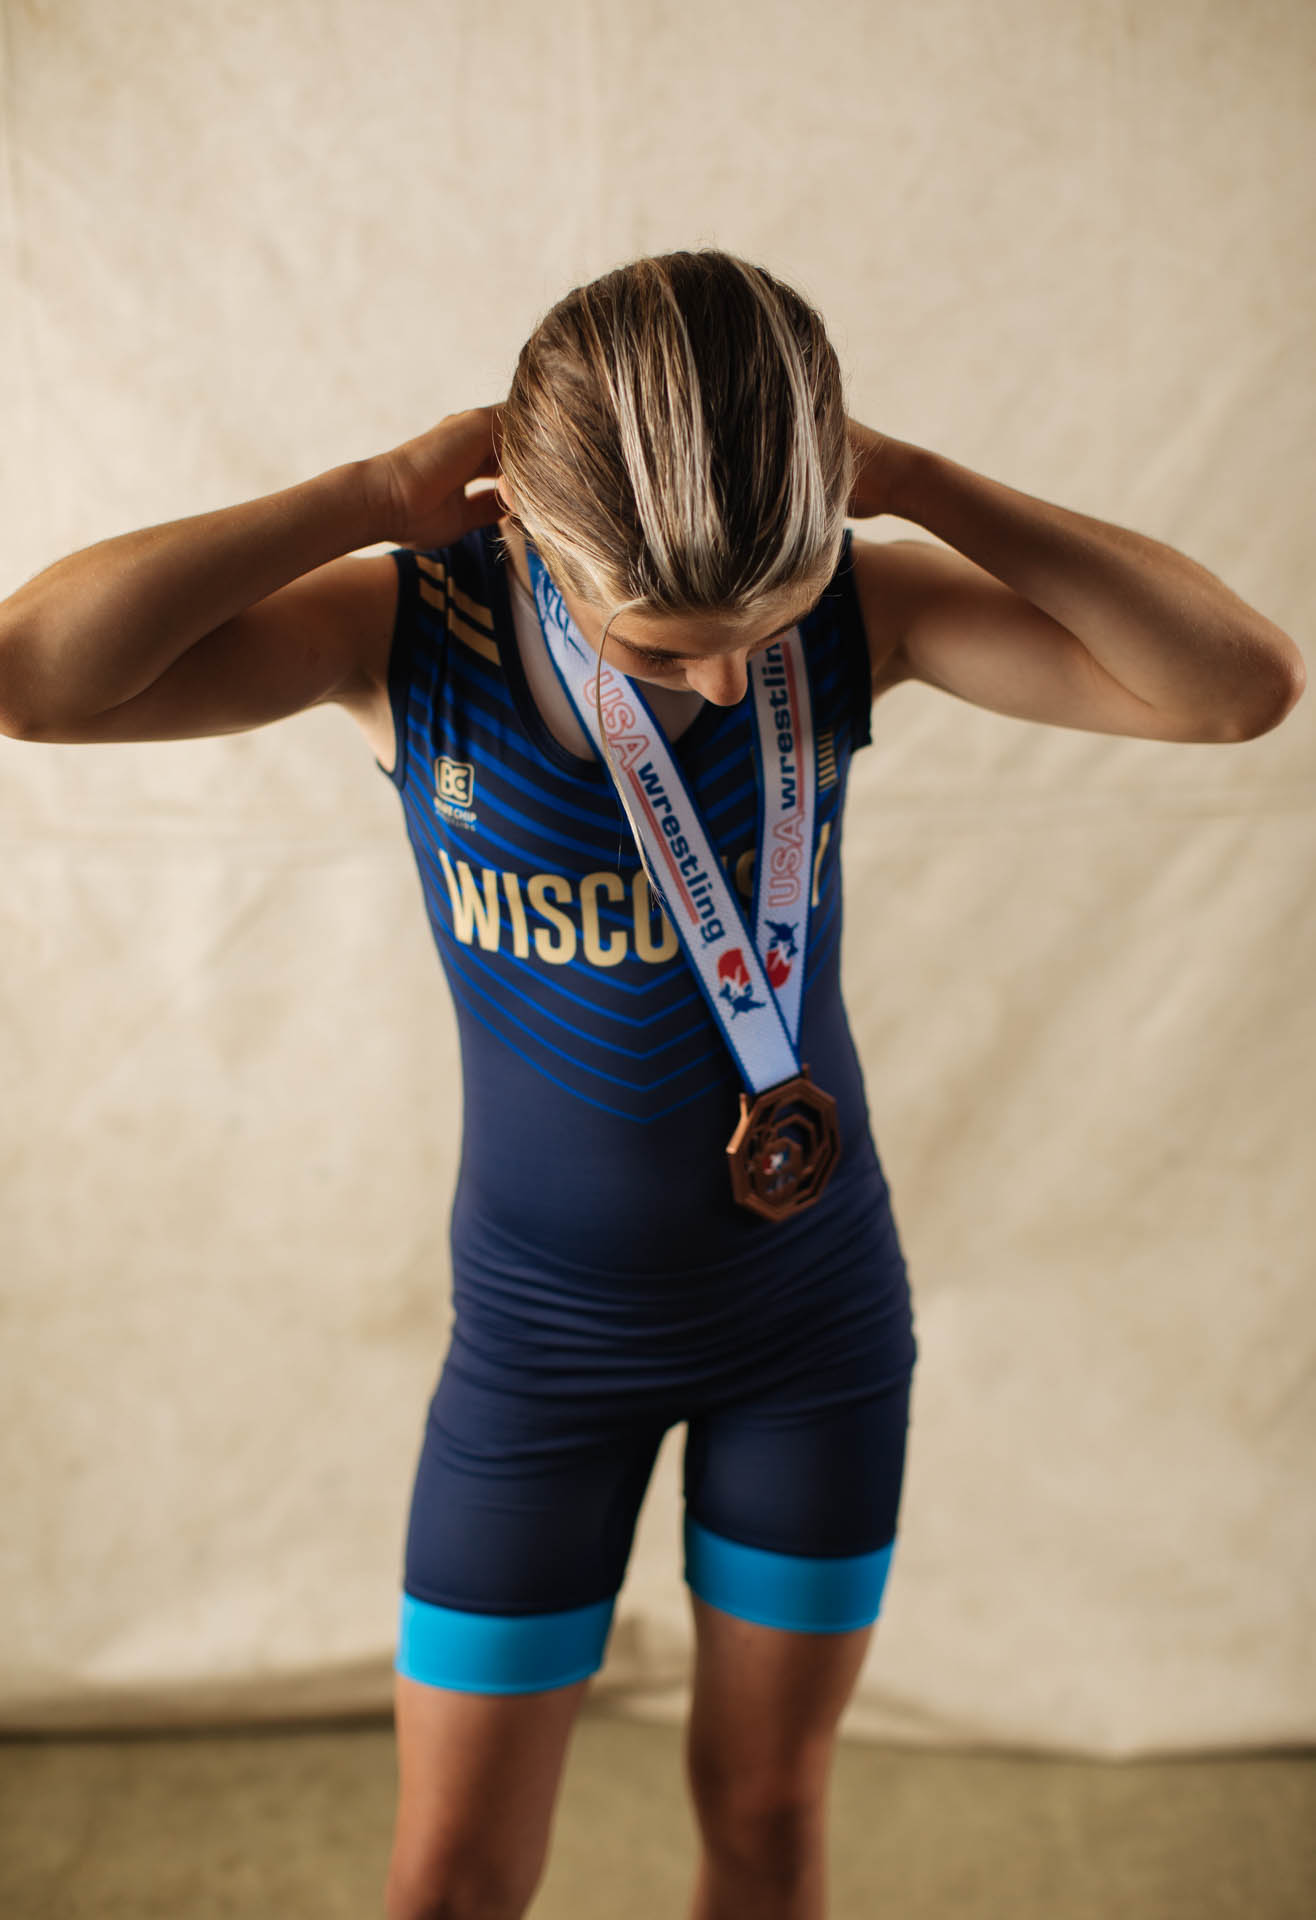 cassidy-female-wrestler-team-wisconsin-usa-wrestling-medal.JPG